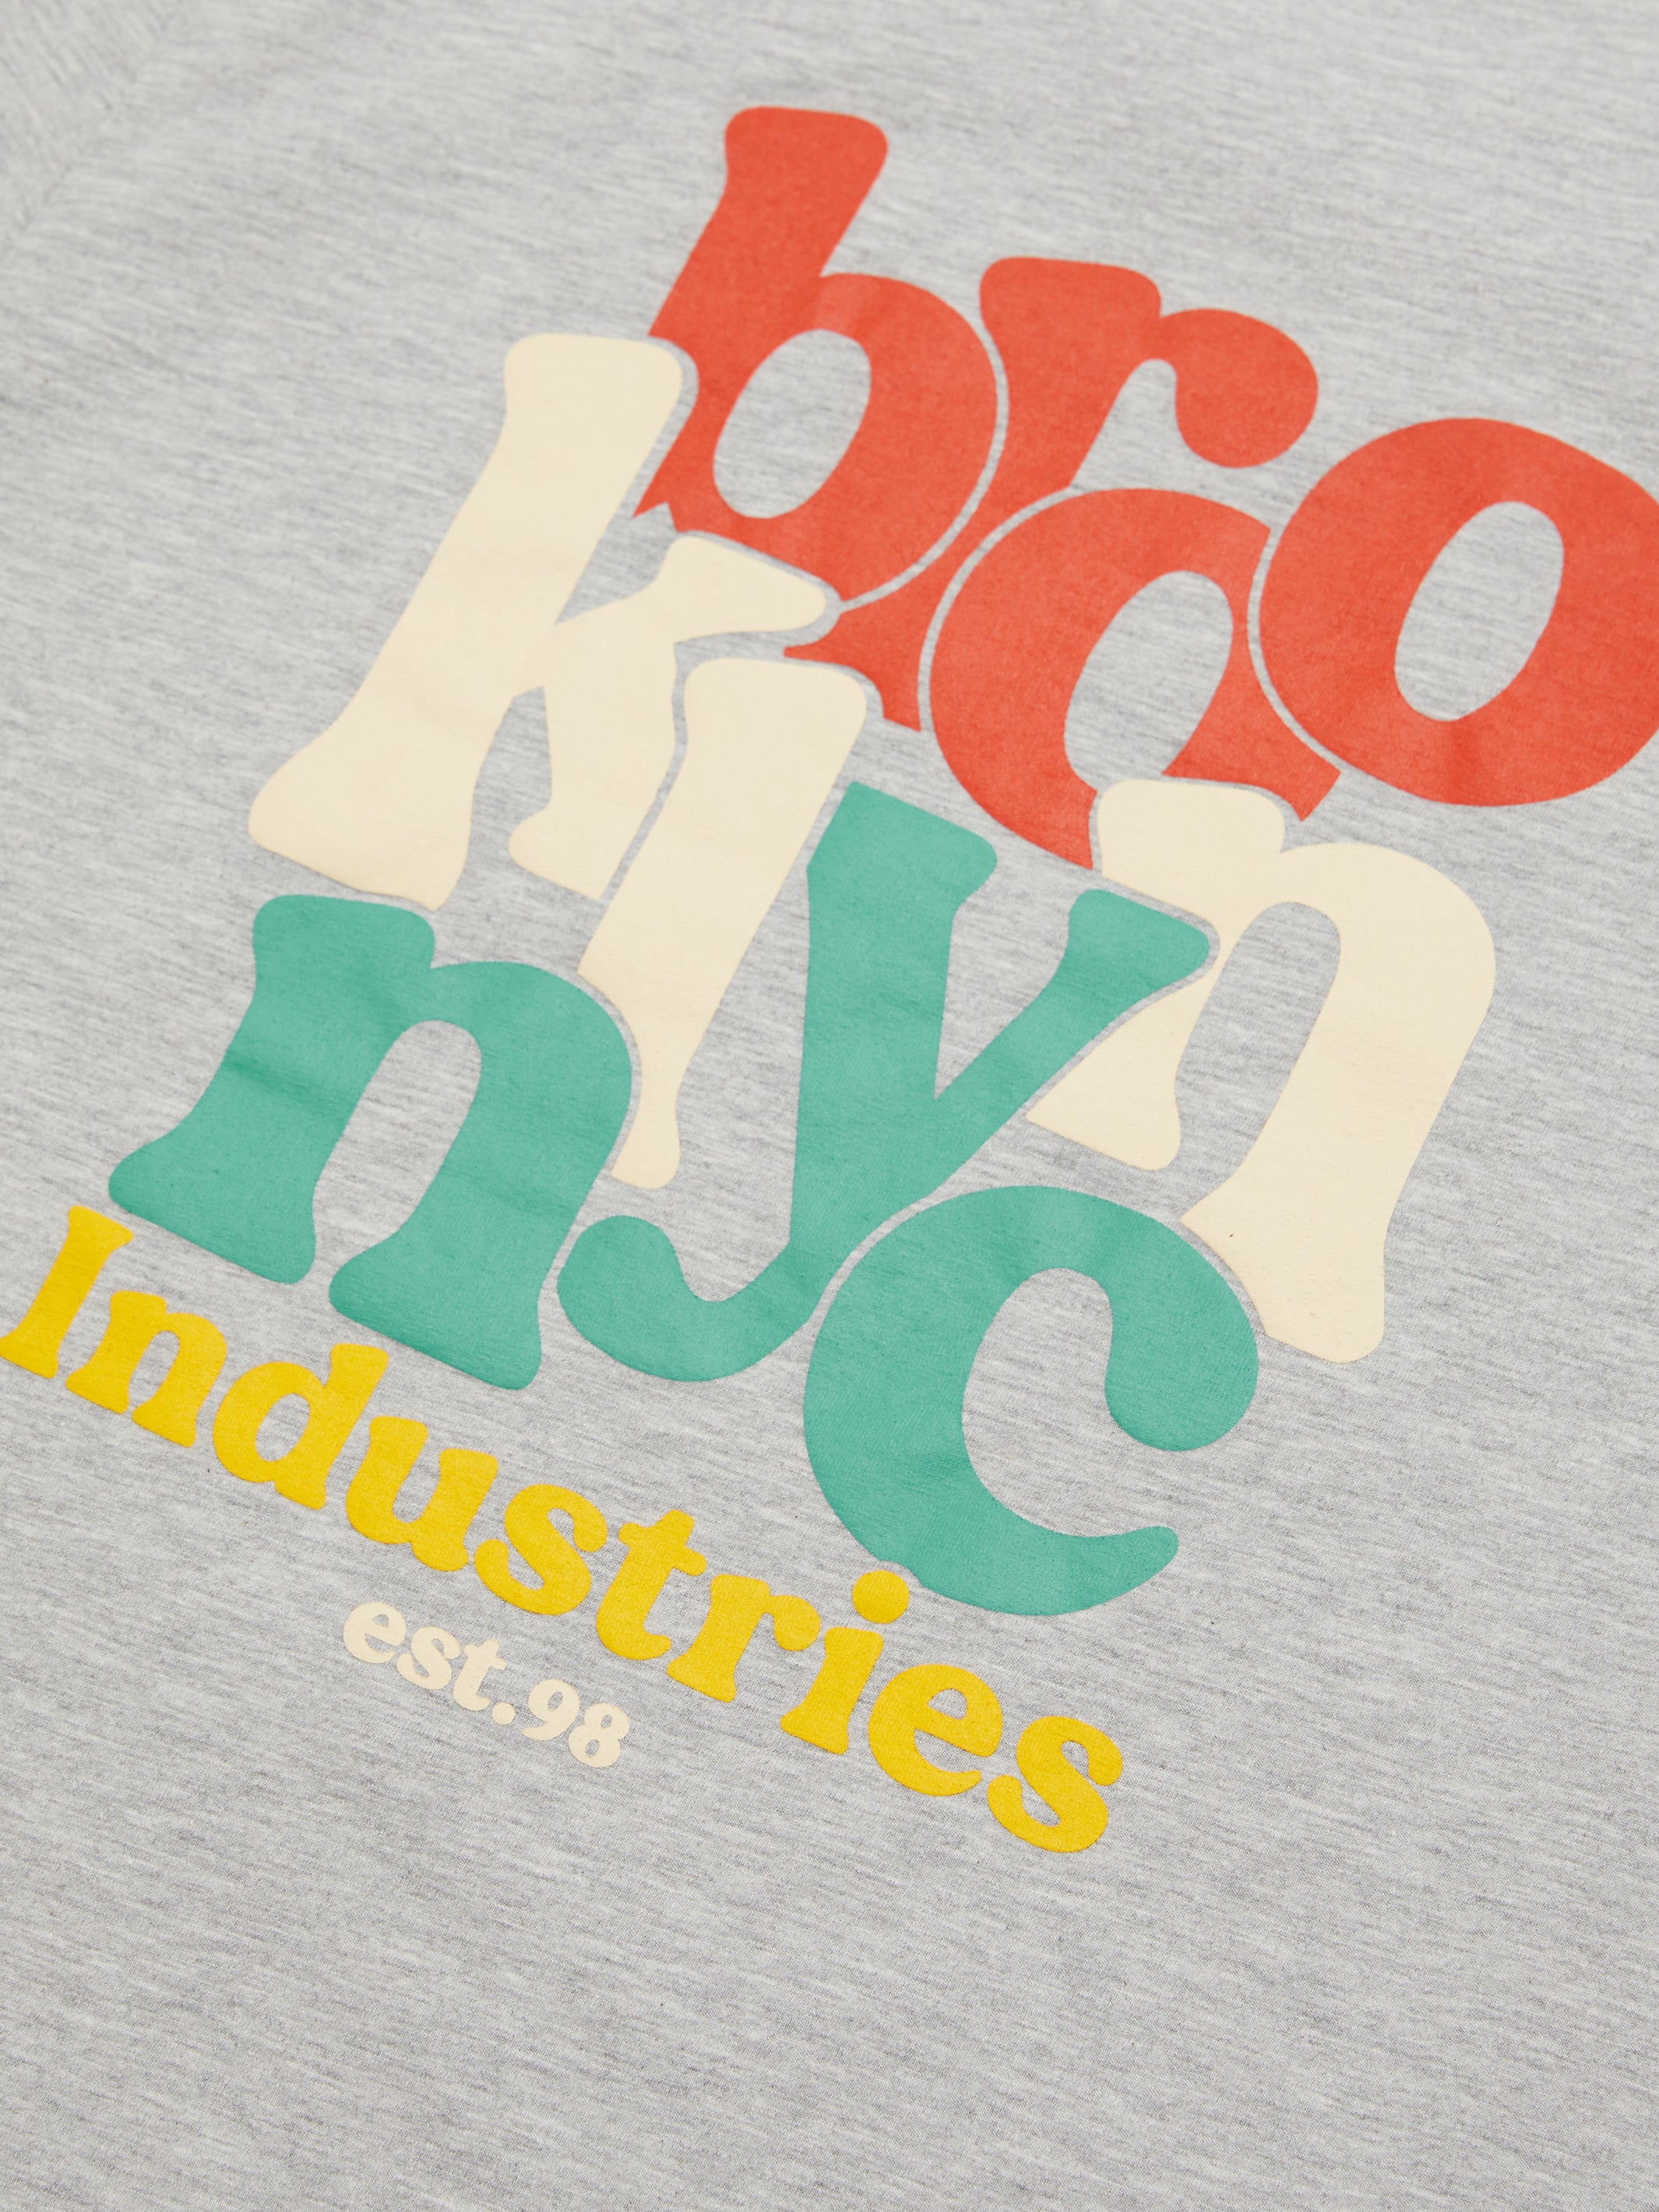 Men's NYC T-shirt in Grey Melange - BROOKLYN INDUSTRIES